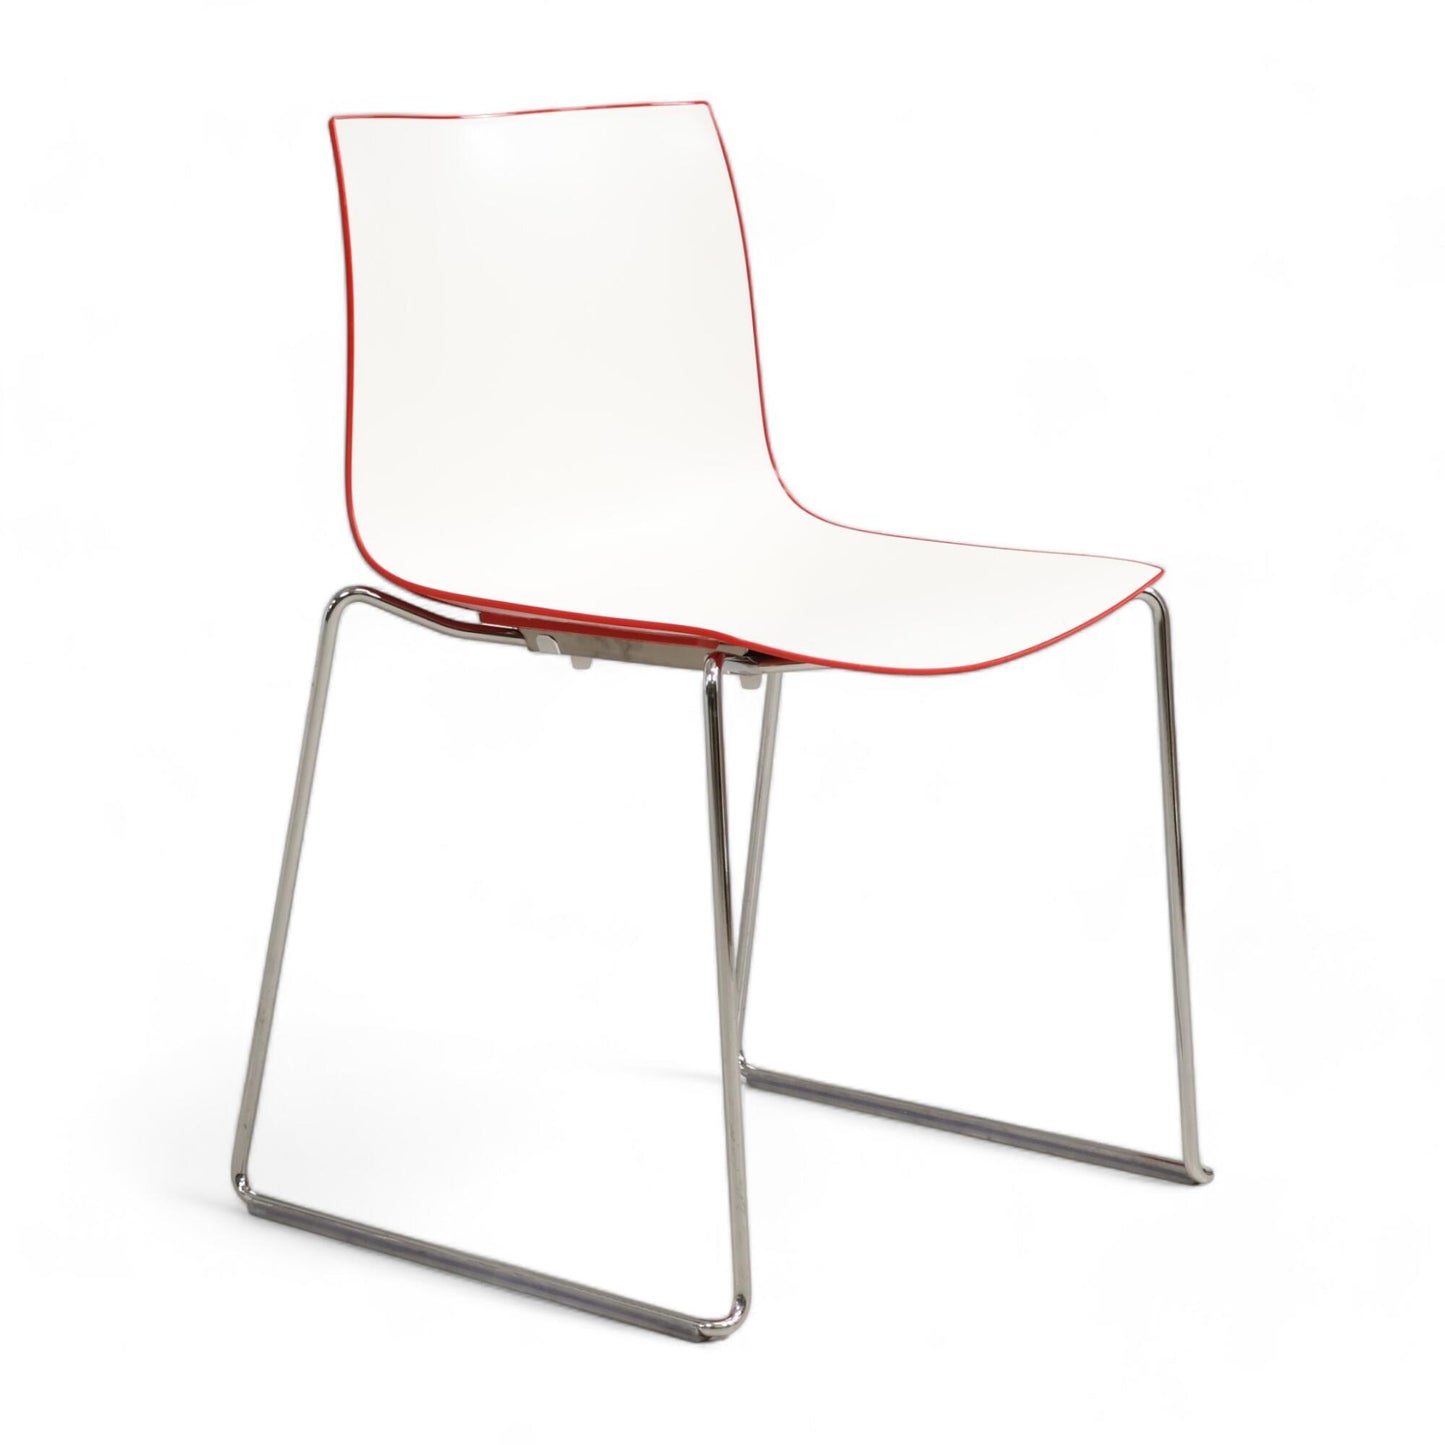 Nyrenset | Arper stol i hvitt og rødt